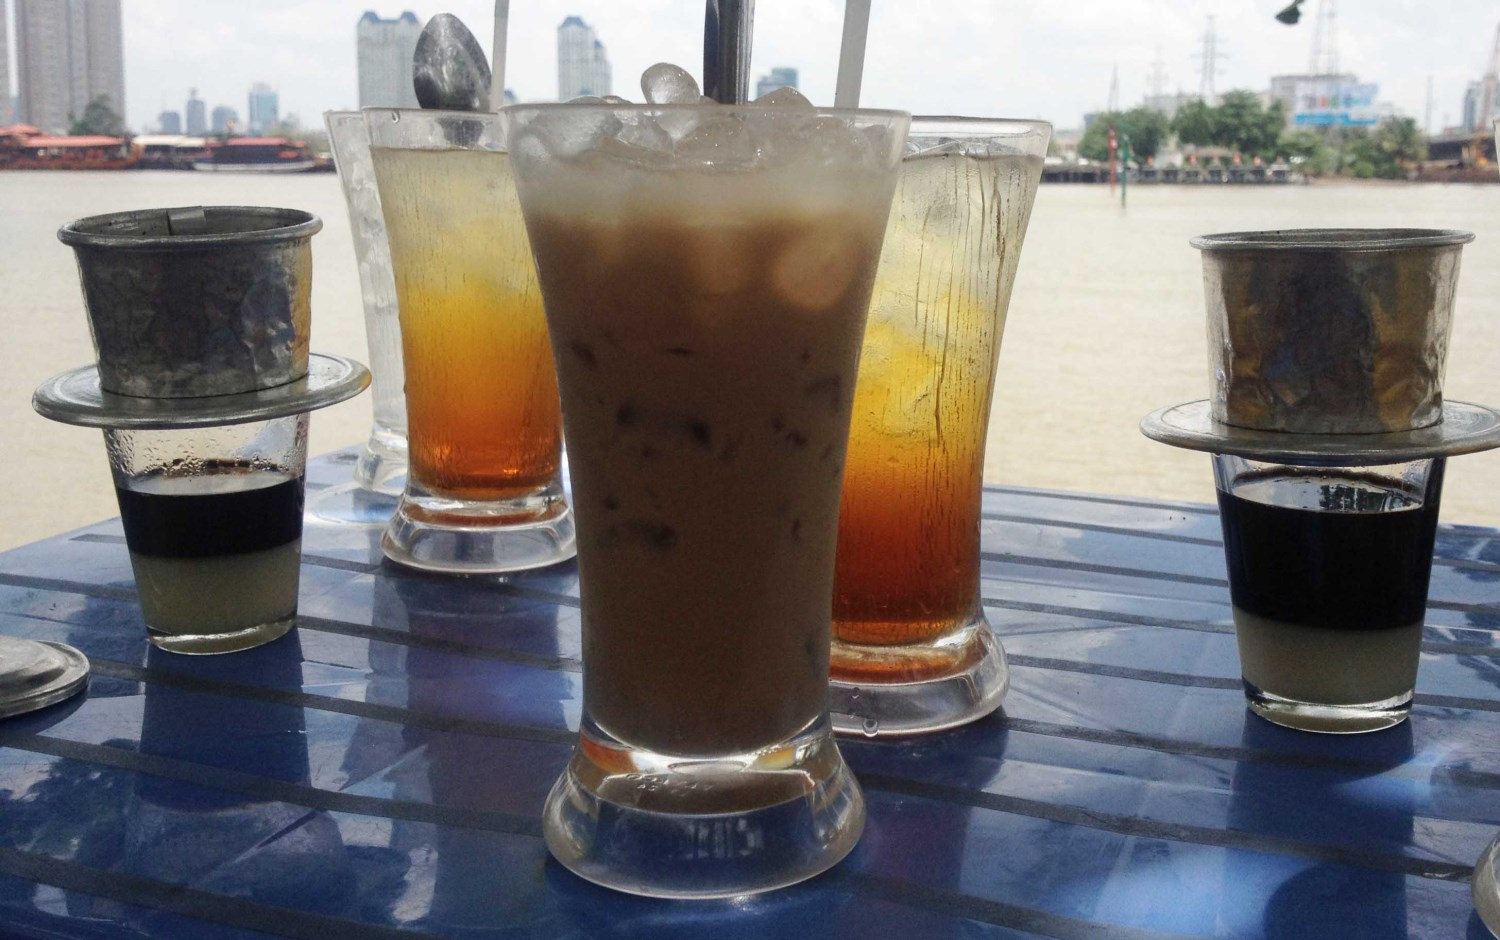 Rain Coffee ở Quận Cầu Giấy, Hà Nội | Foody.vn